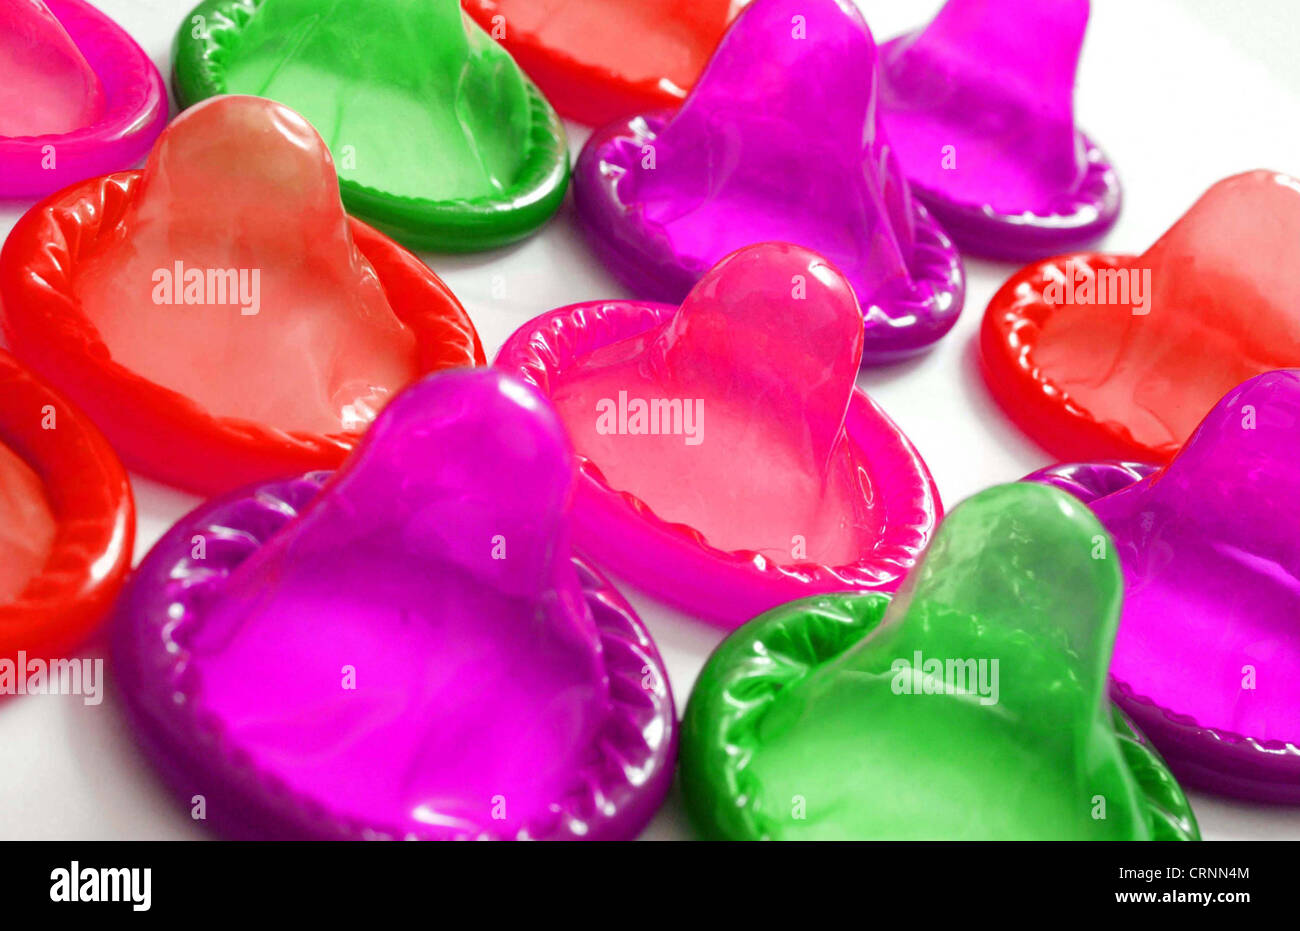 Condones de anticonceptivos se muestra en varios colores. Foto de stock